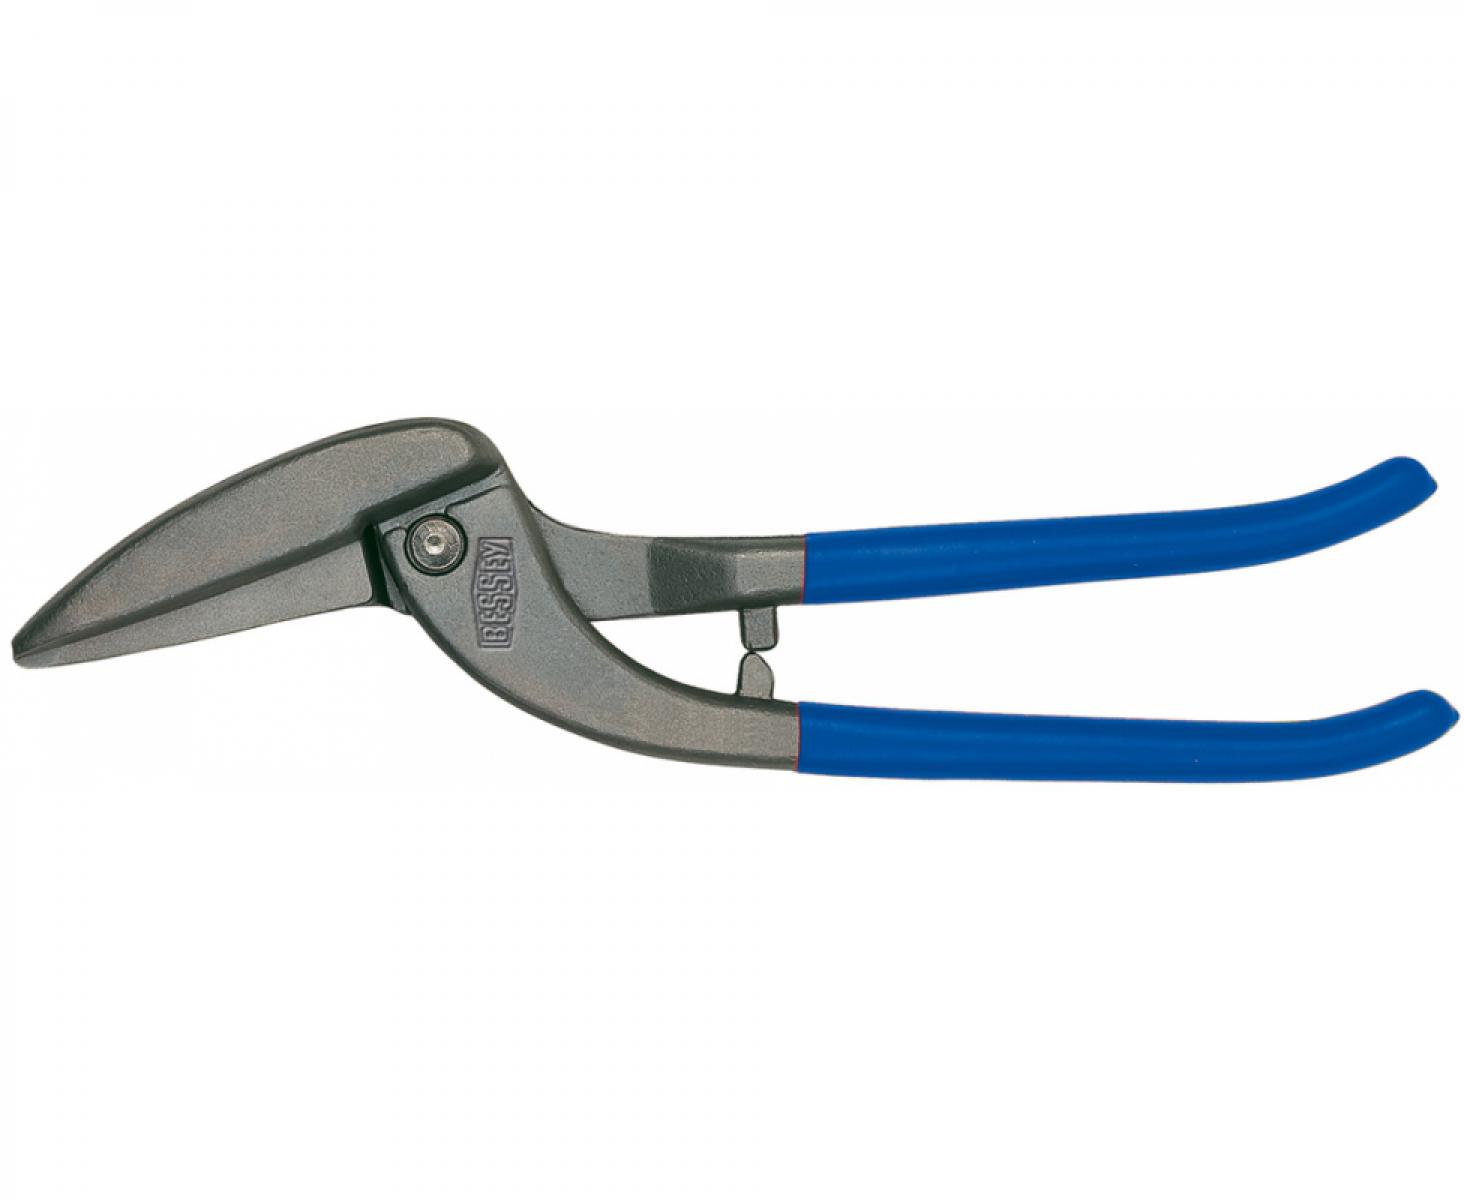 Обычные ножницы Пеликан для резки листового металла Erdi ER-D218-300 праворежущие